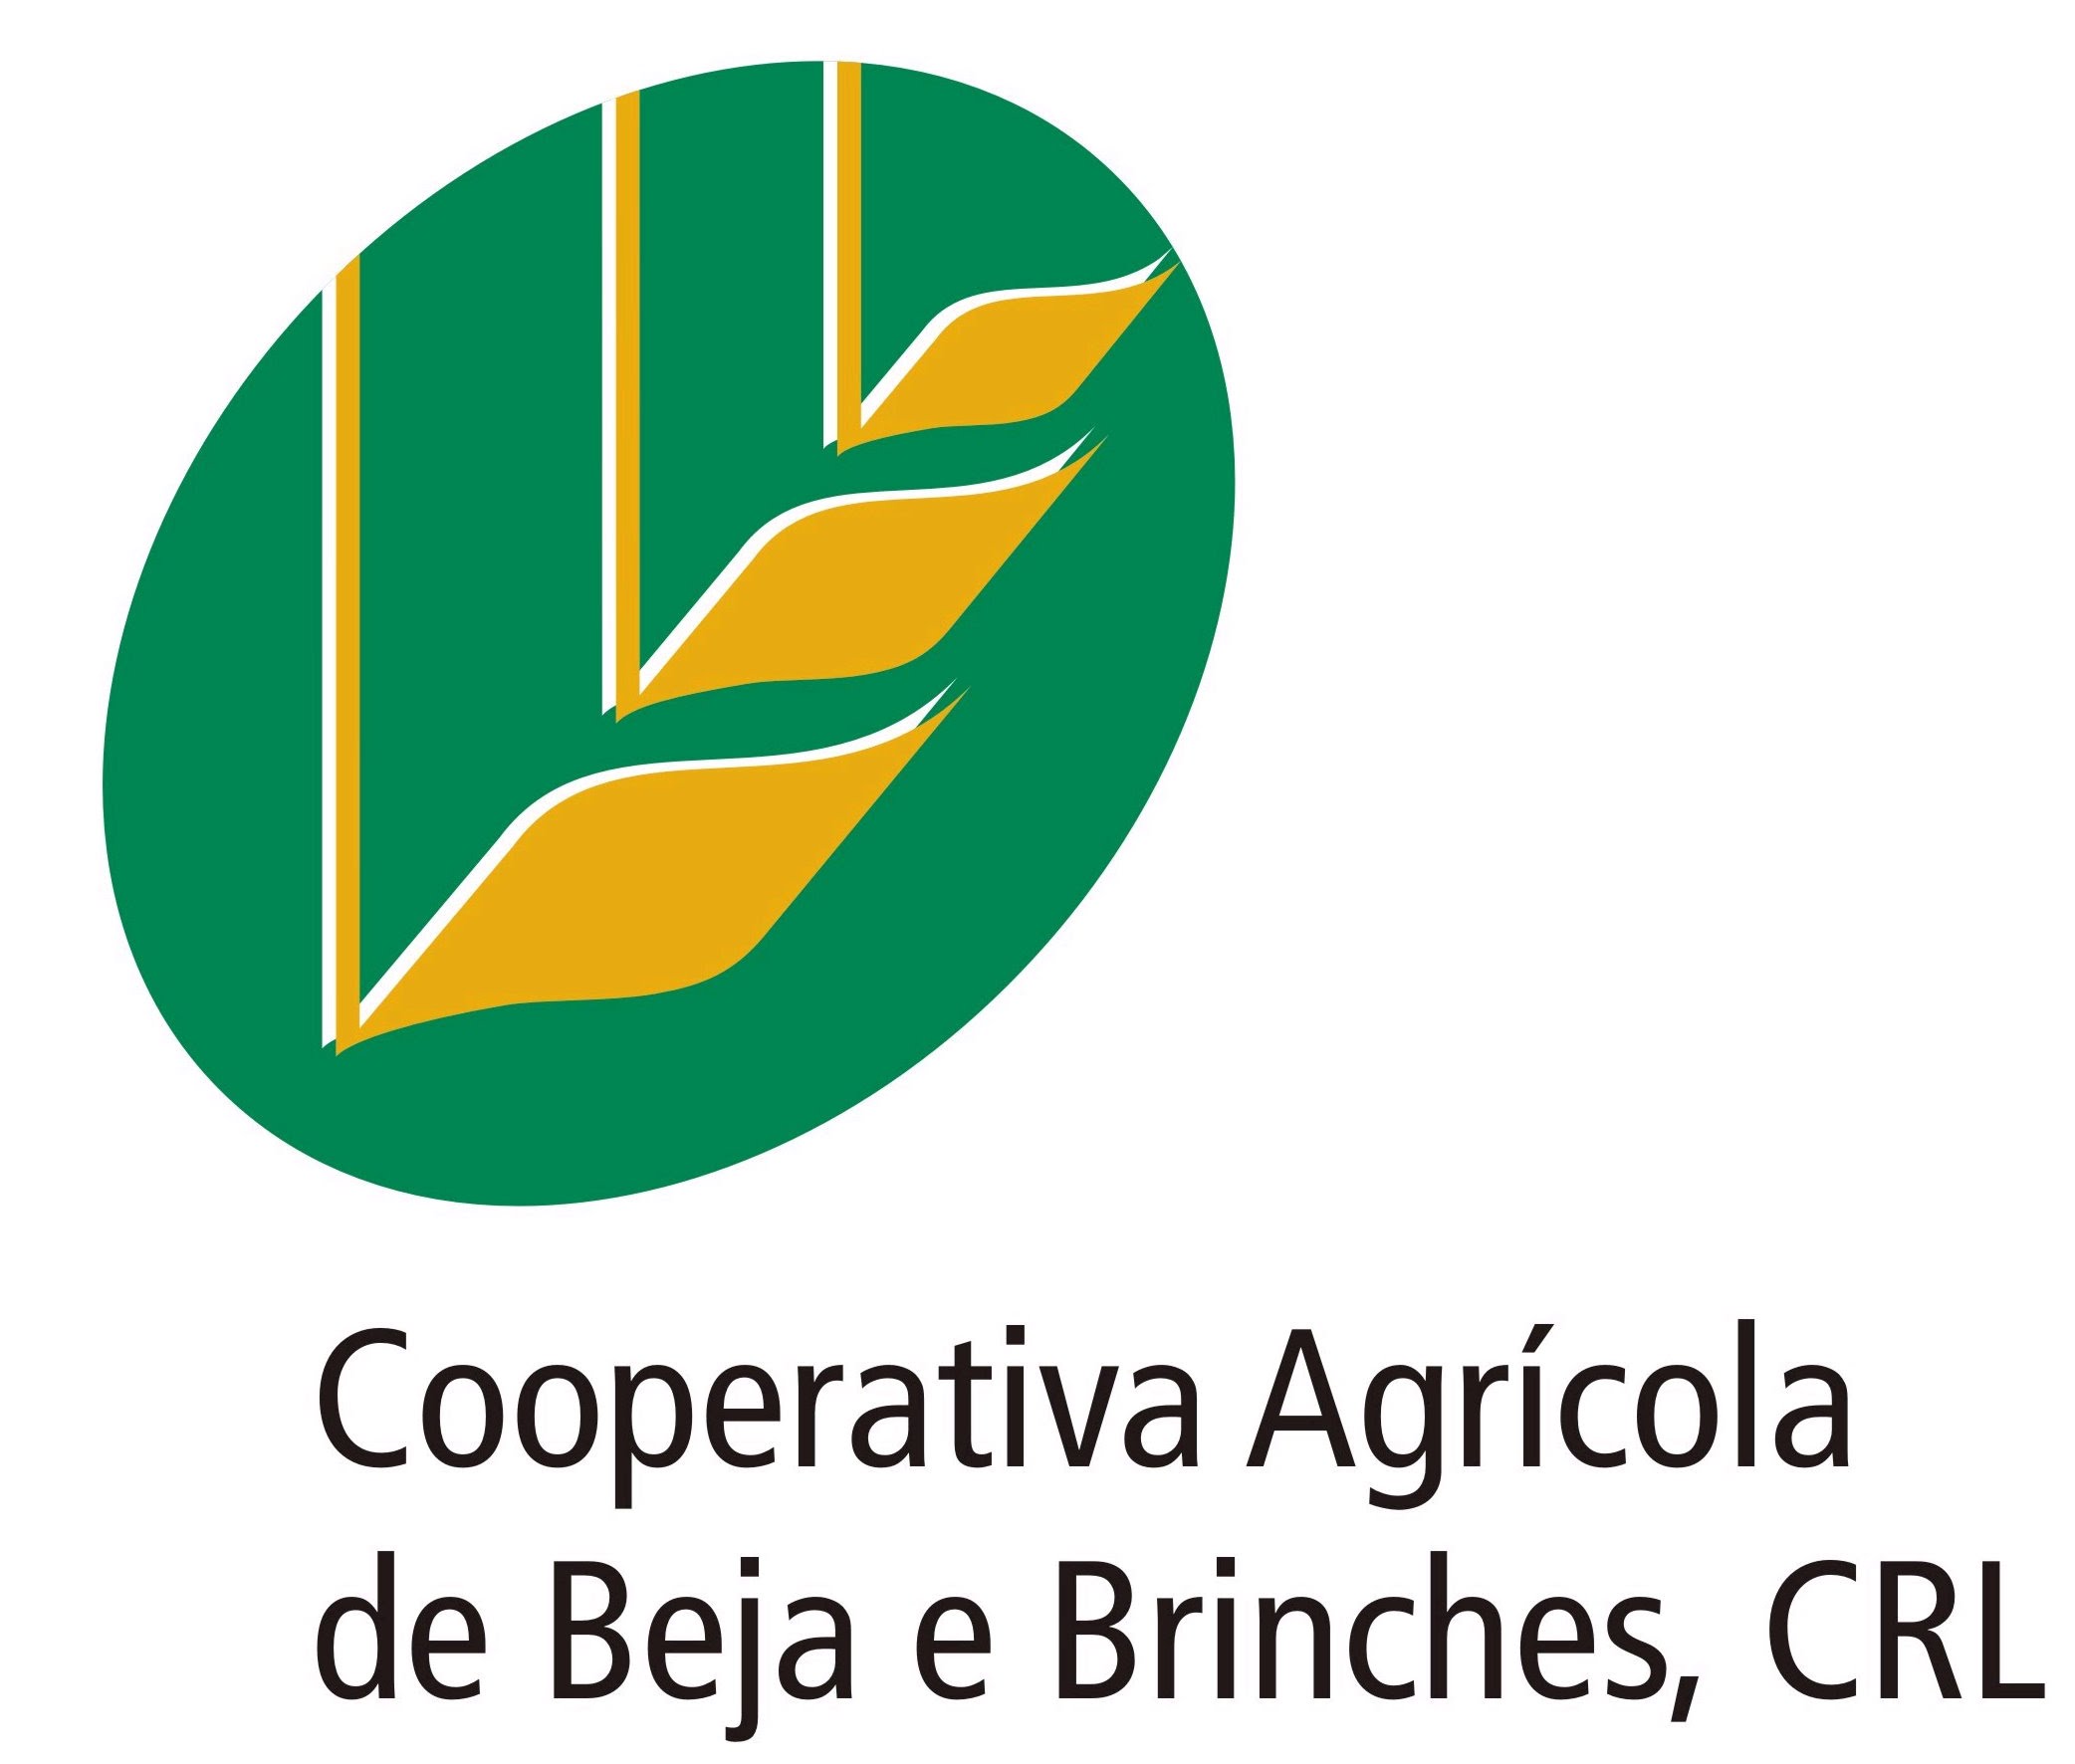 Cooperativa Agrícola de Beja e Brinches, CRL